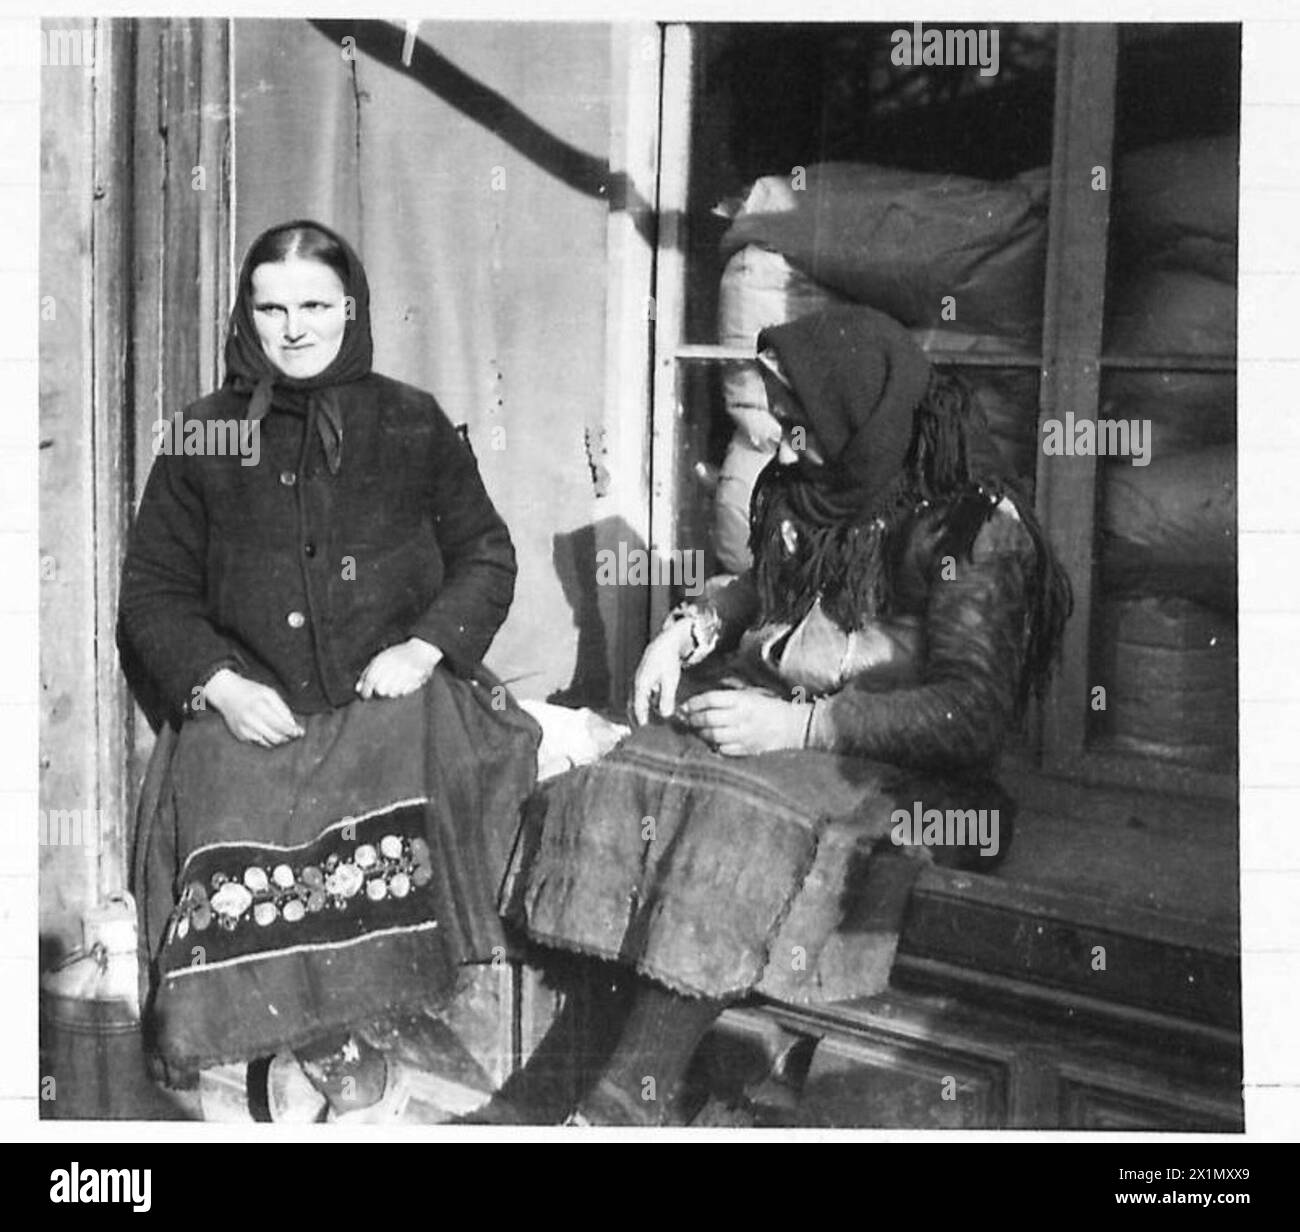 SCENE DI BELGRADESTREET A BELGRADO - due contadine serbe si riposano su un negozio, dopo una dura mattinata di lavoro vendendo i loro prodotti di campagna in città, l'esercito britannico Foto Stock